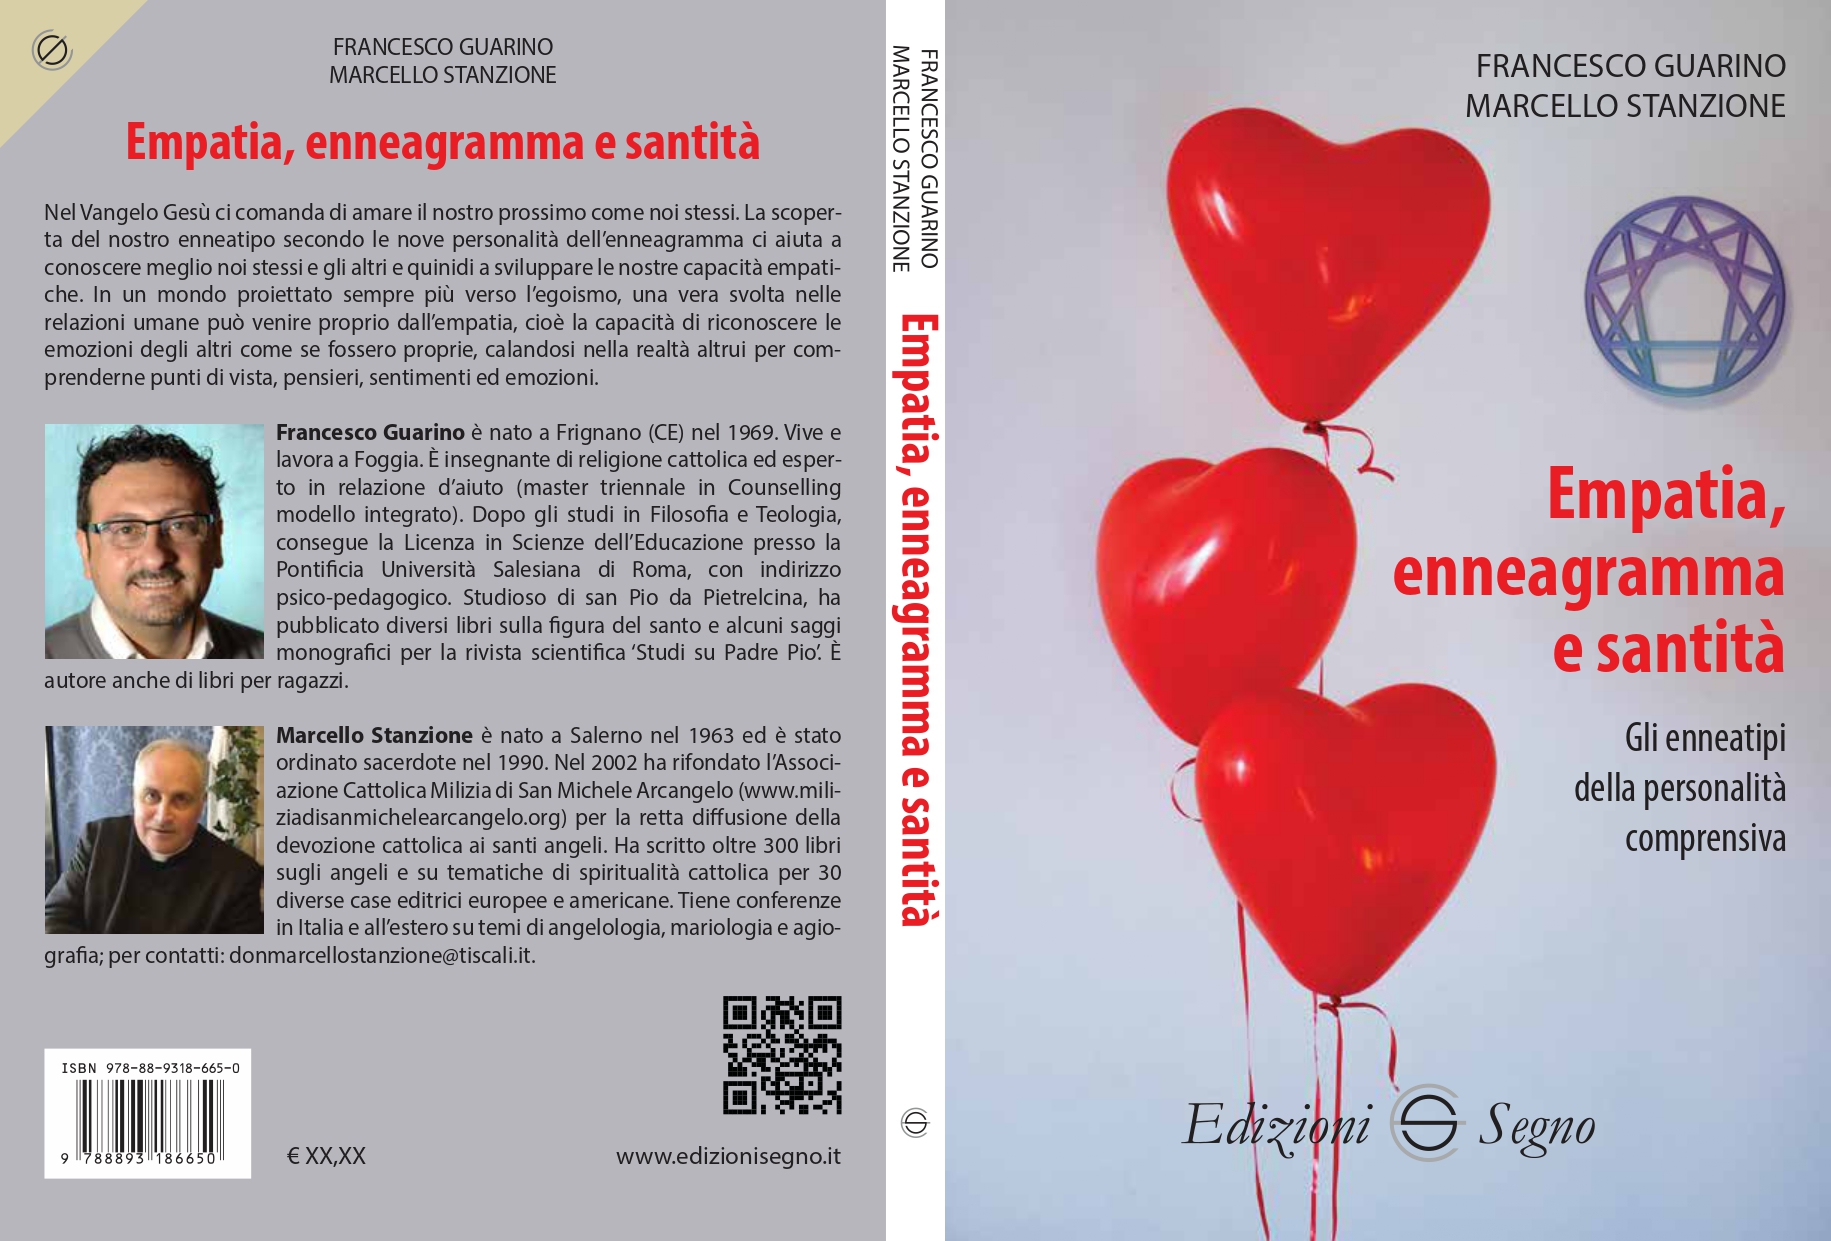 Presentazione libro “Empatia, enneagramma e santità” di don Marcello Stanzione